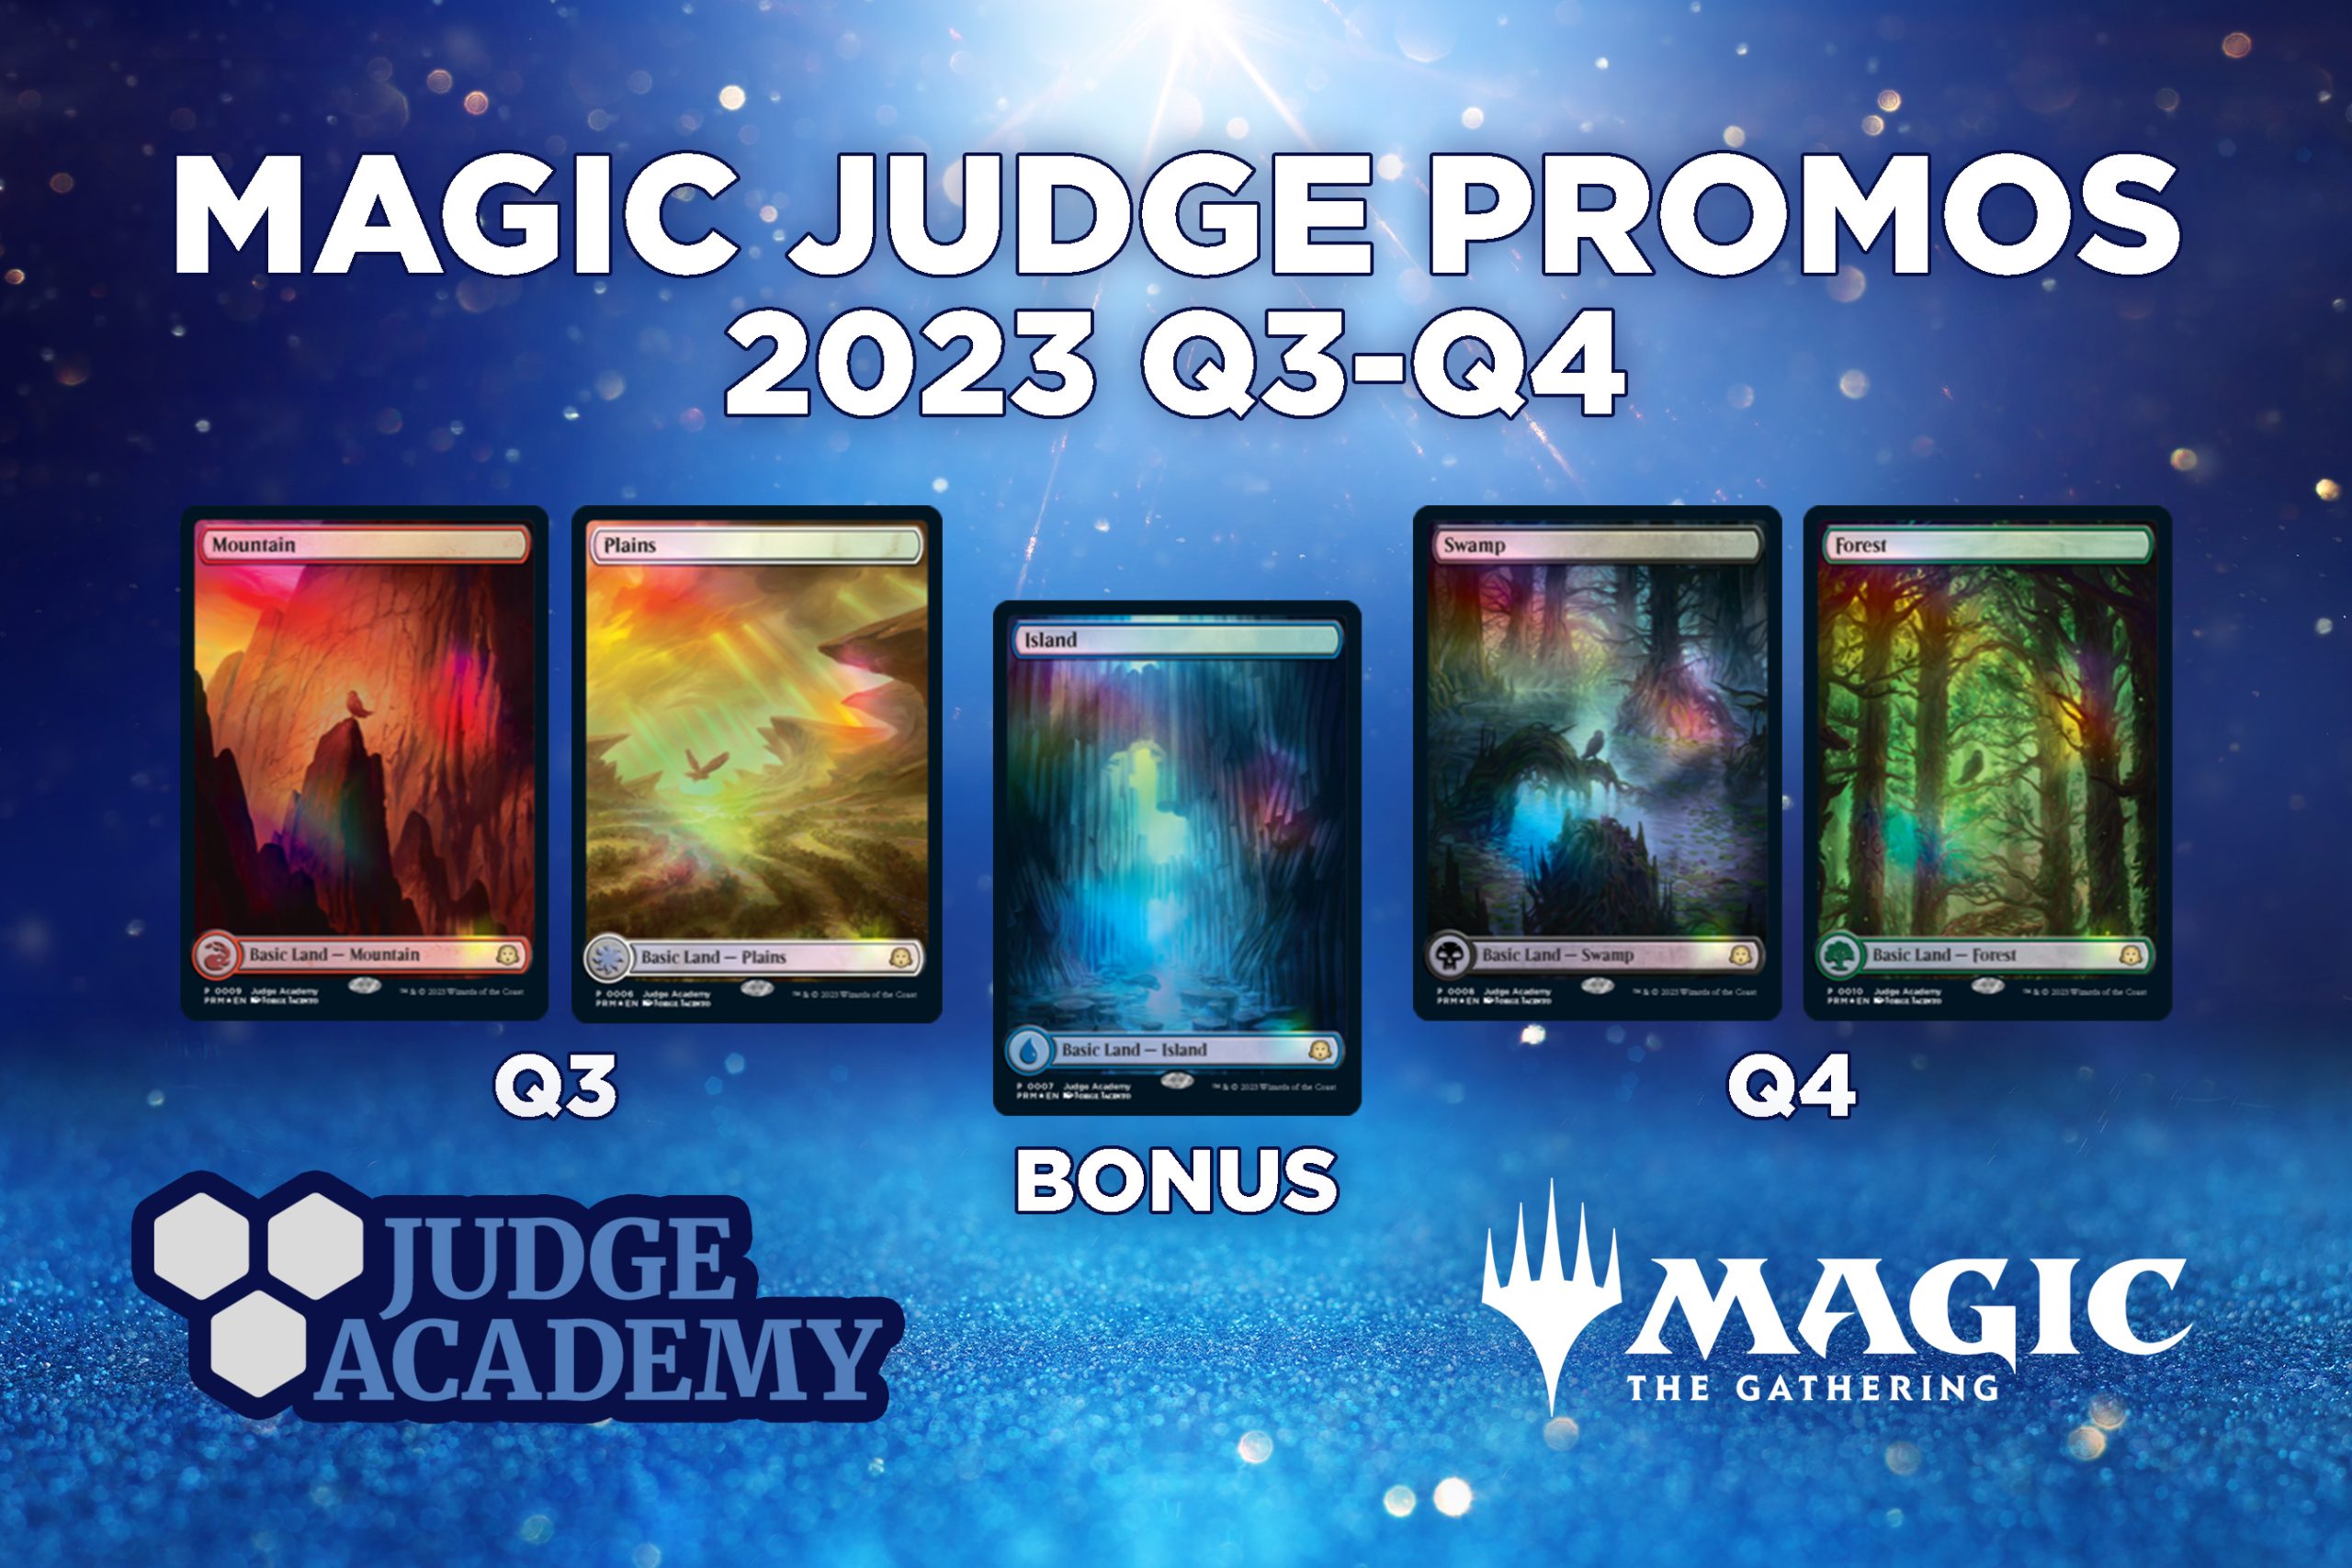 Magic Judge promo cards for Q3 and Q4